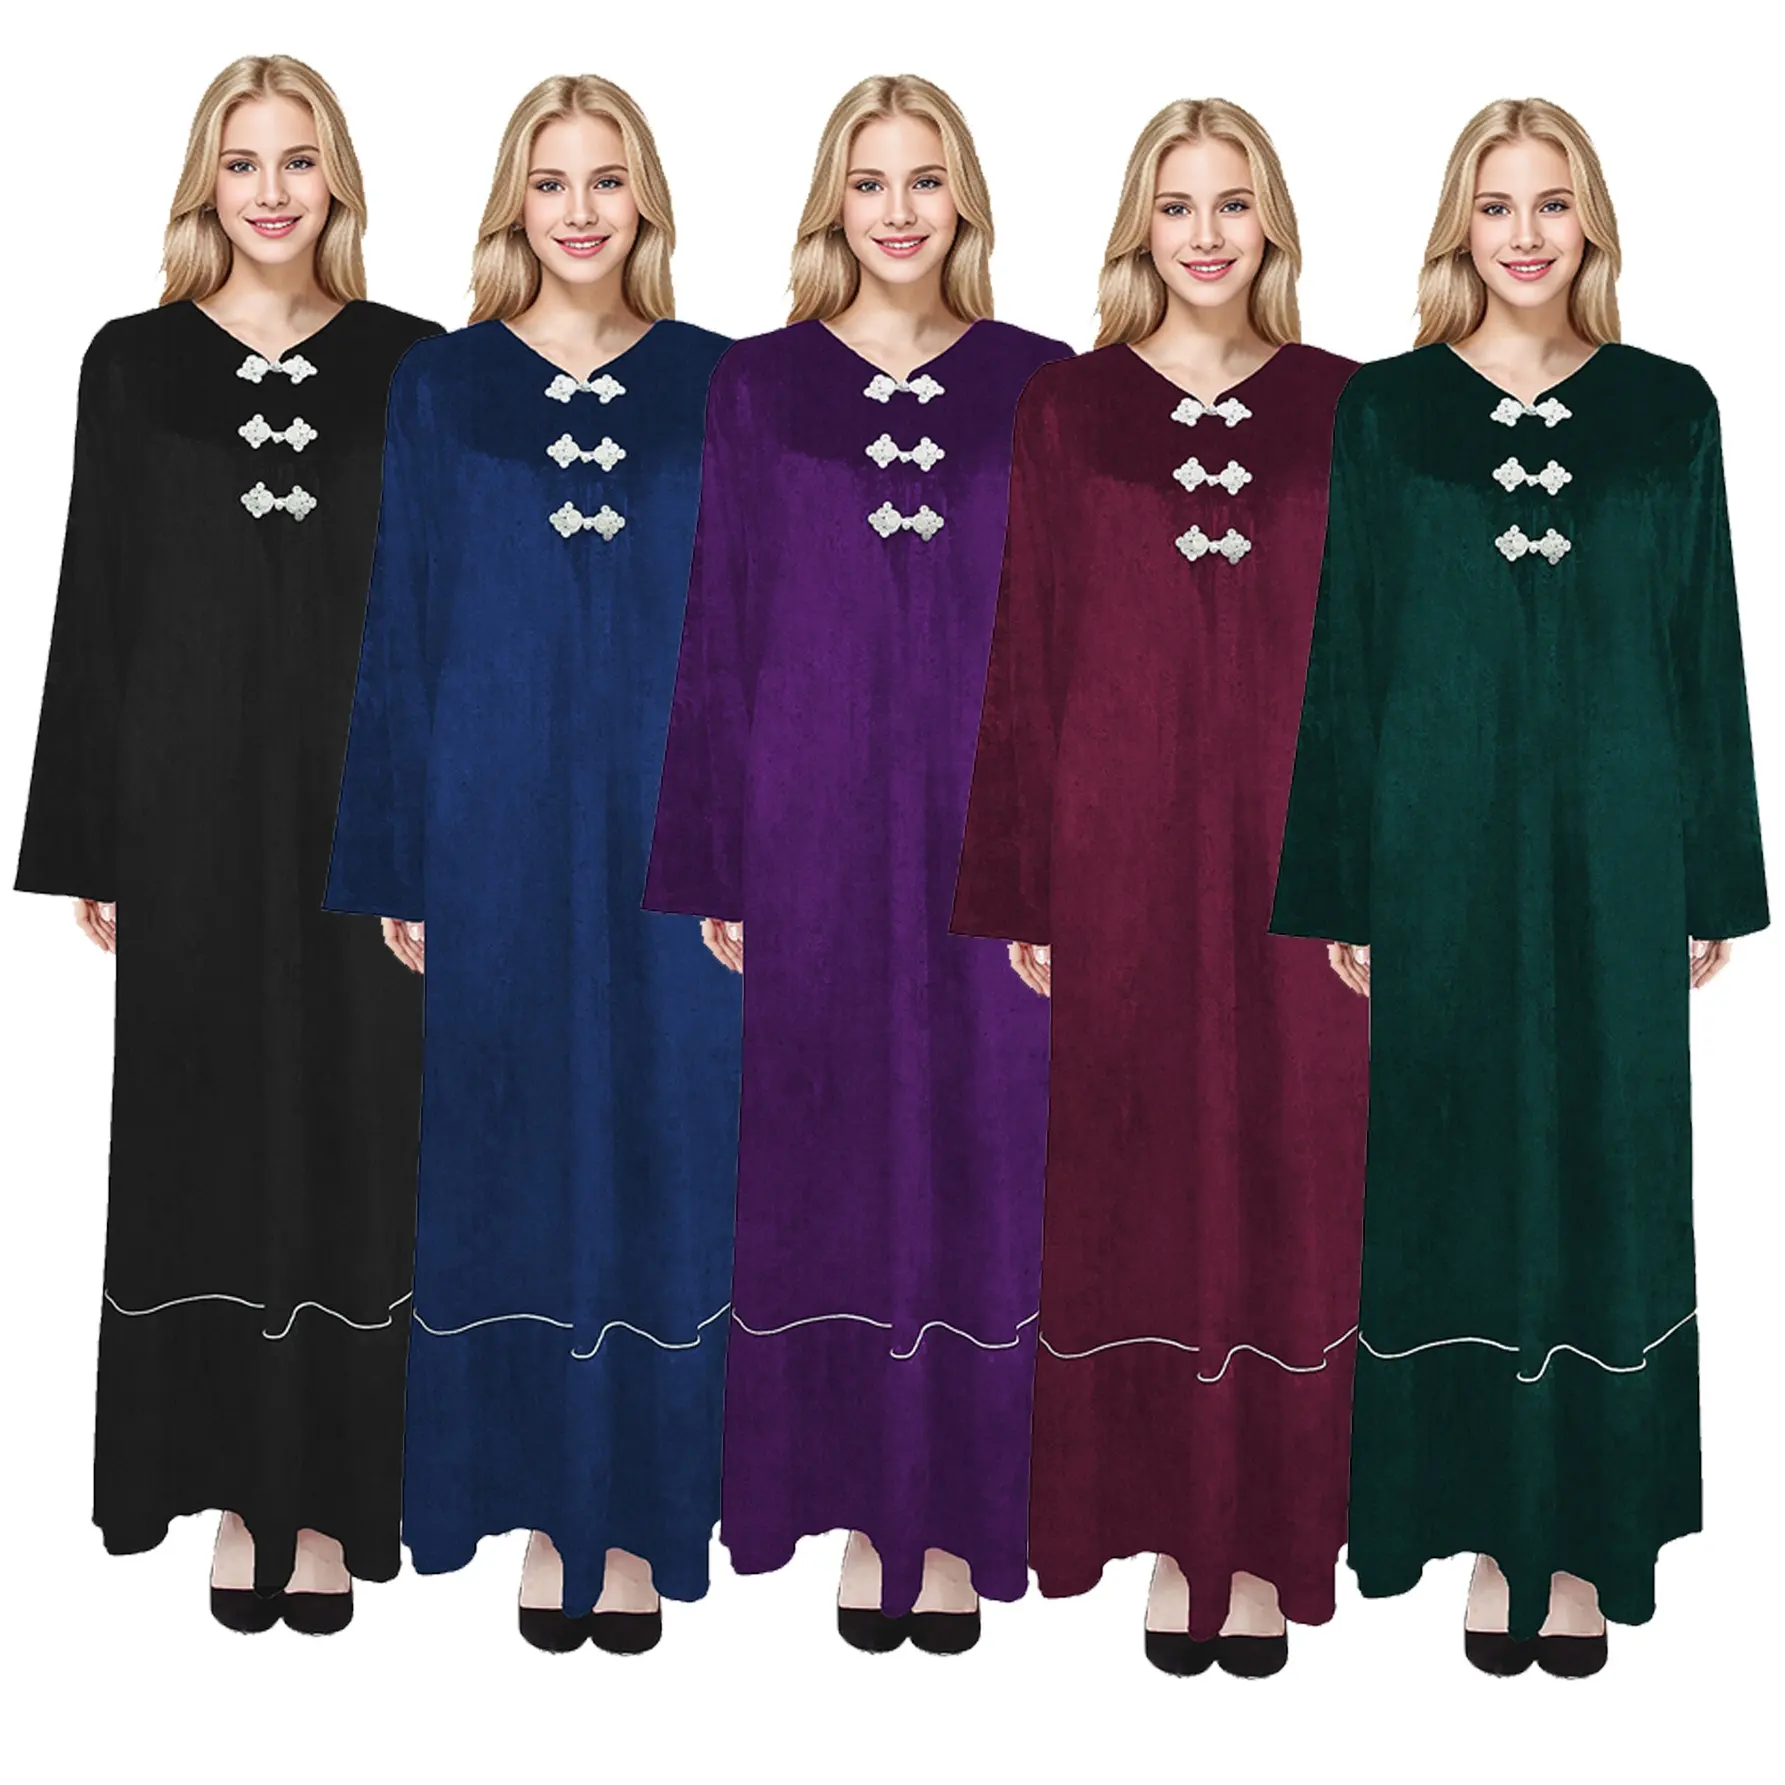 M005 New Abaya Jilabab Dubai Gebet Buibui Kebaya muslimischen Kleid Wildleder Winter hochwertige Langarm islamische Kleidung Kleid